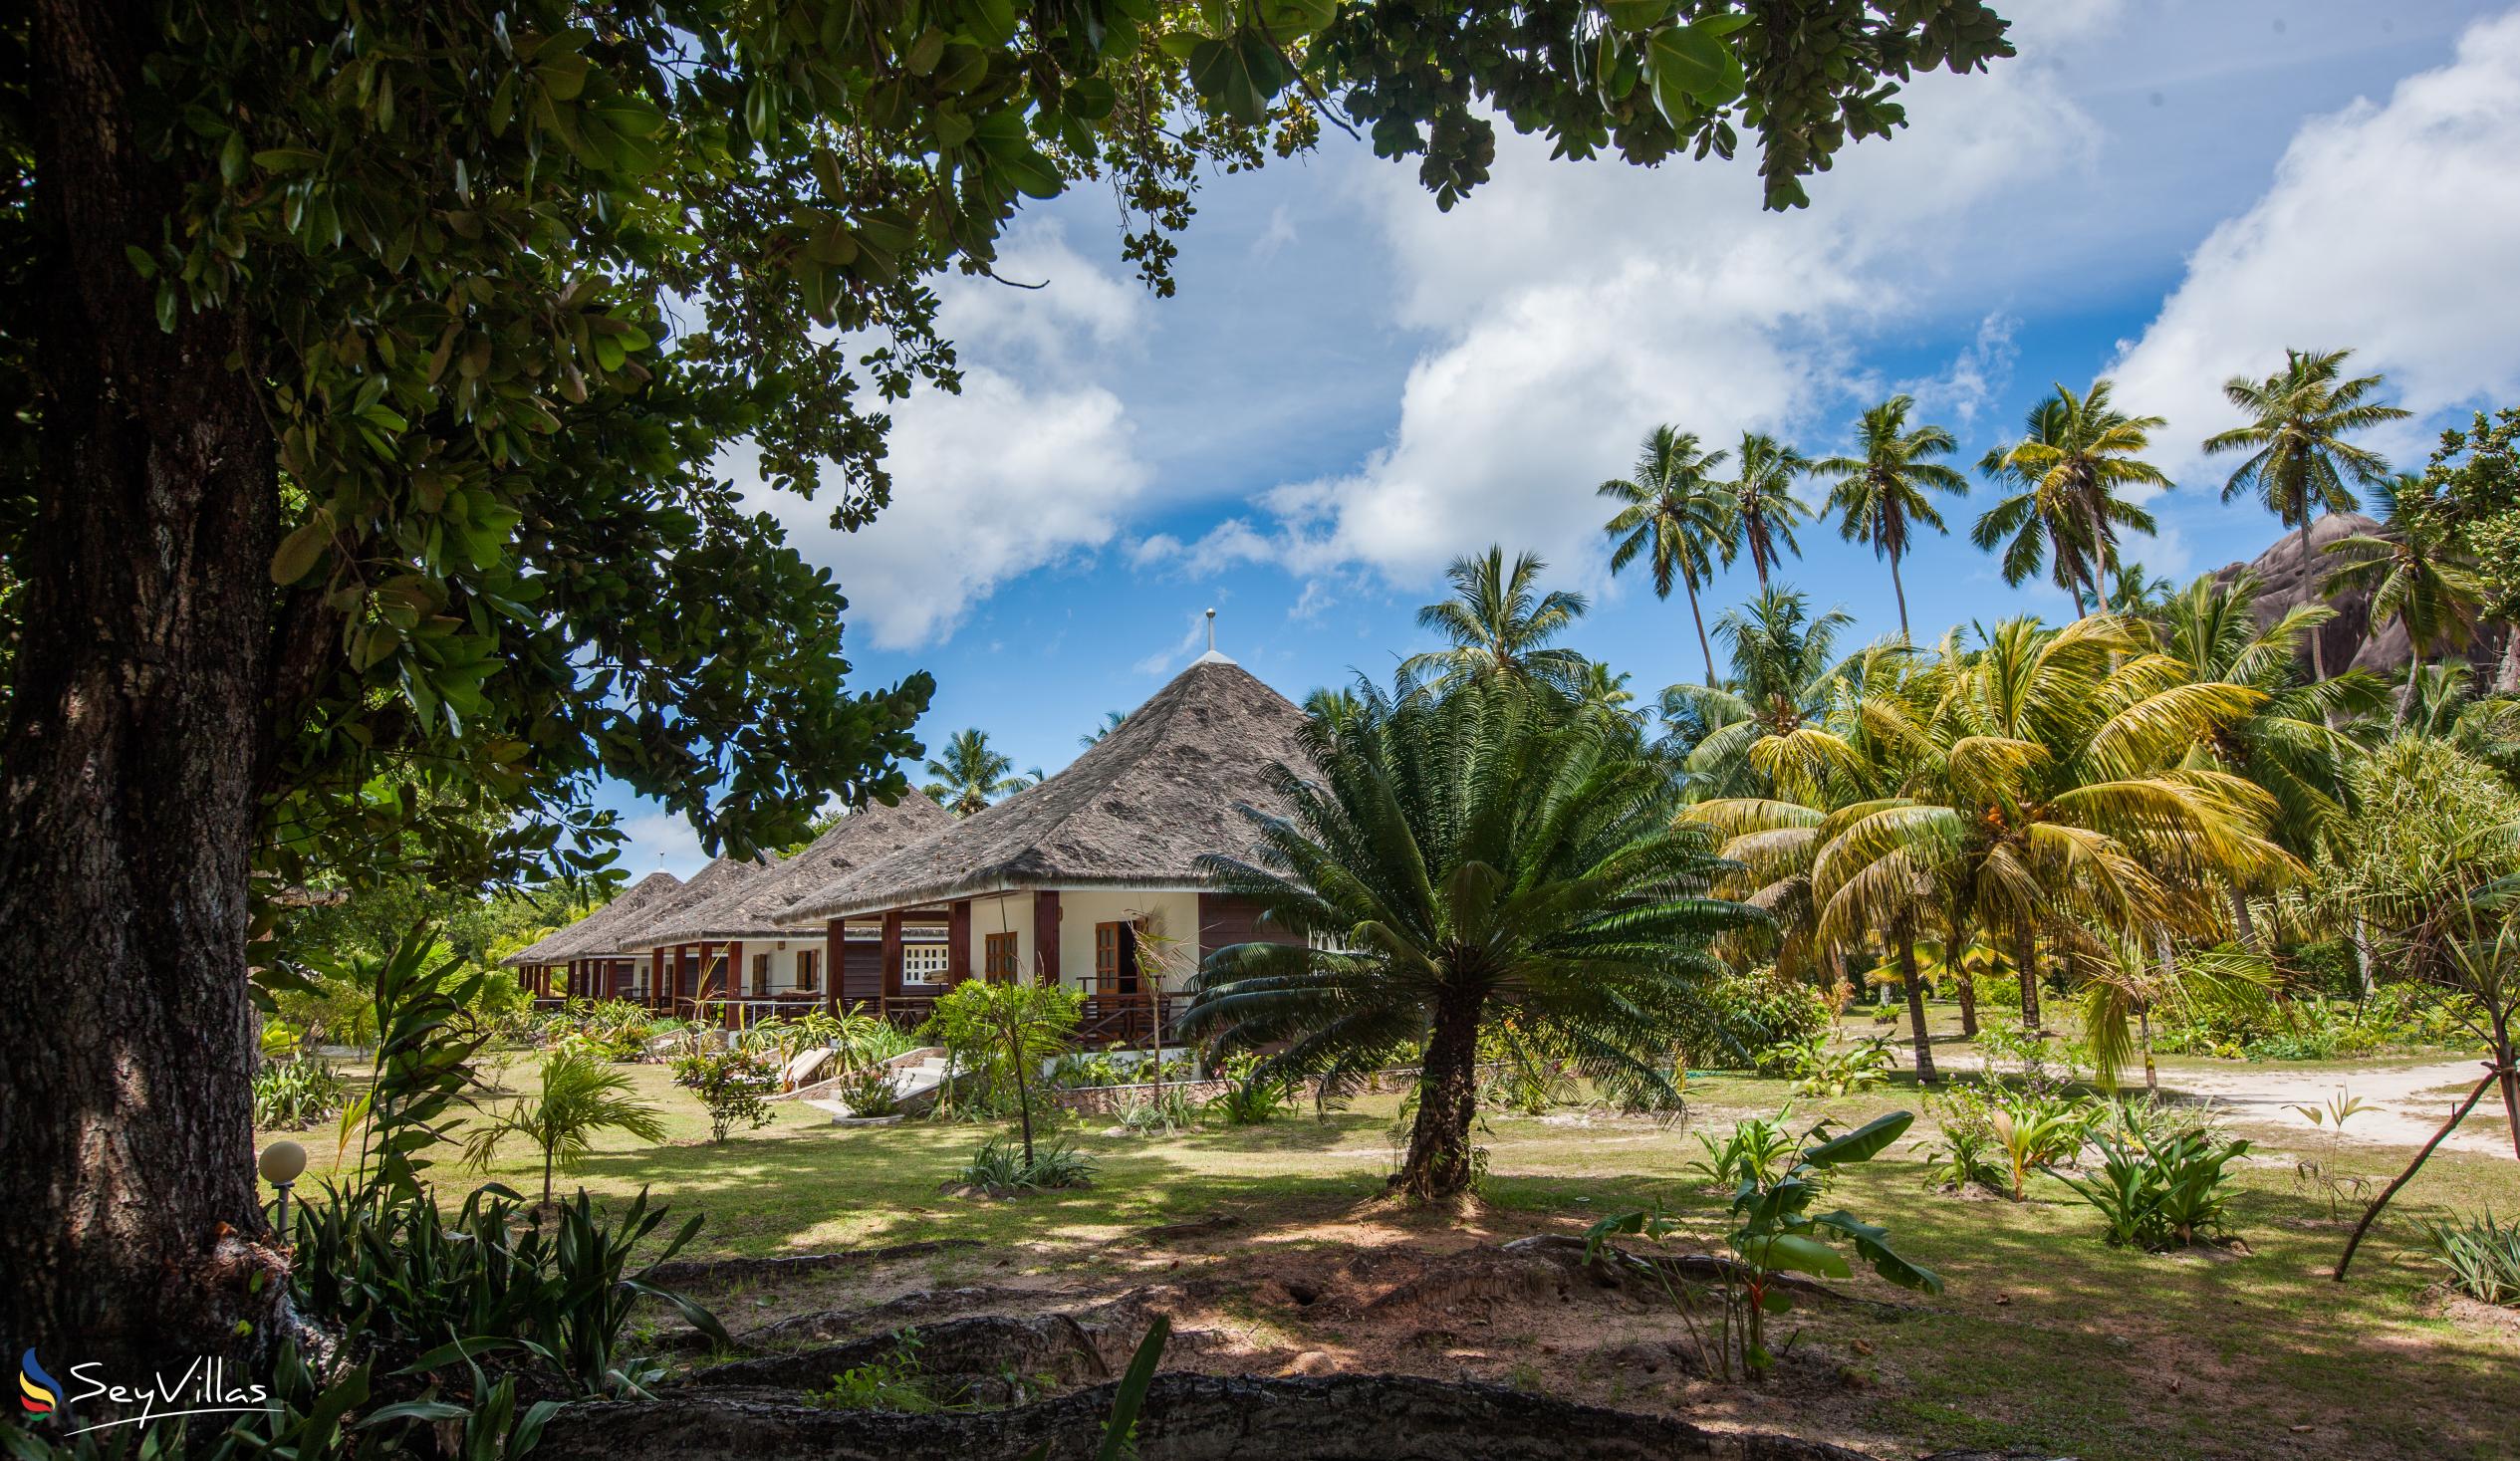 Foto 8: La Digue Island Lodge (L'Union Beach Villas) - Aussenbereich - La Digue (Seychellen)